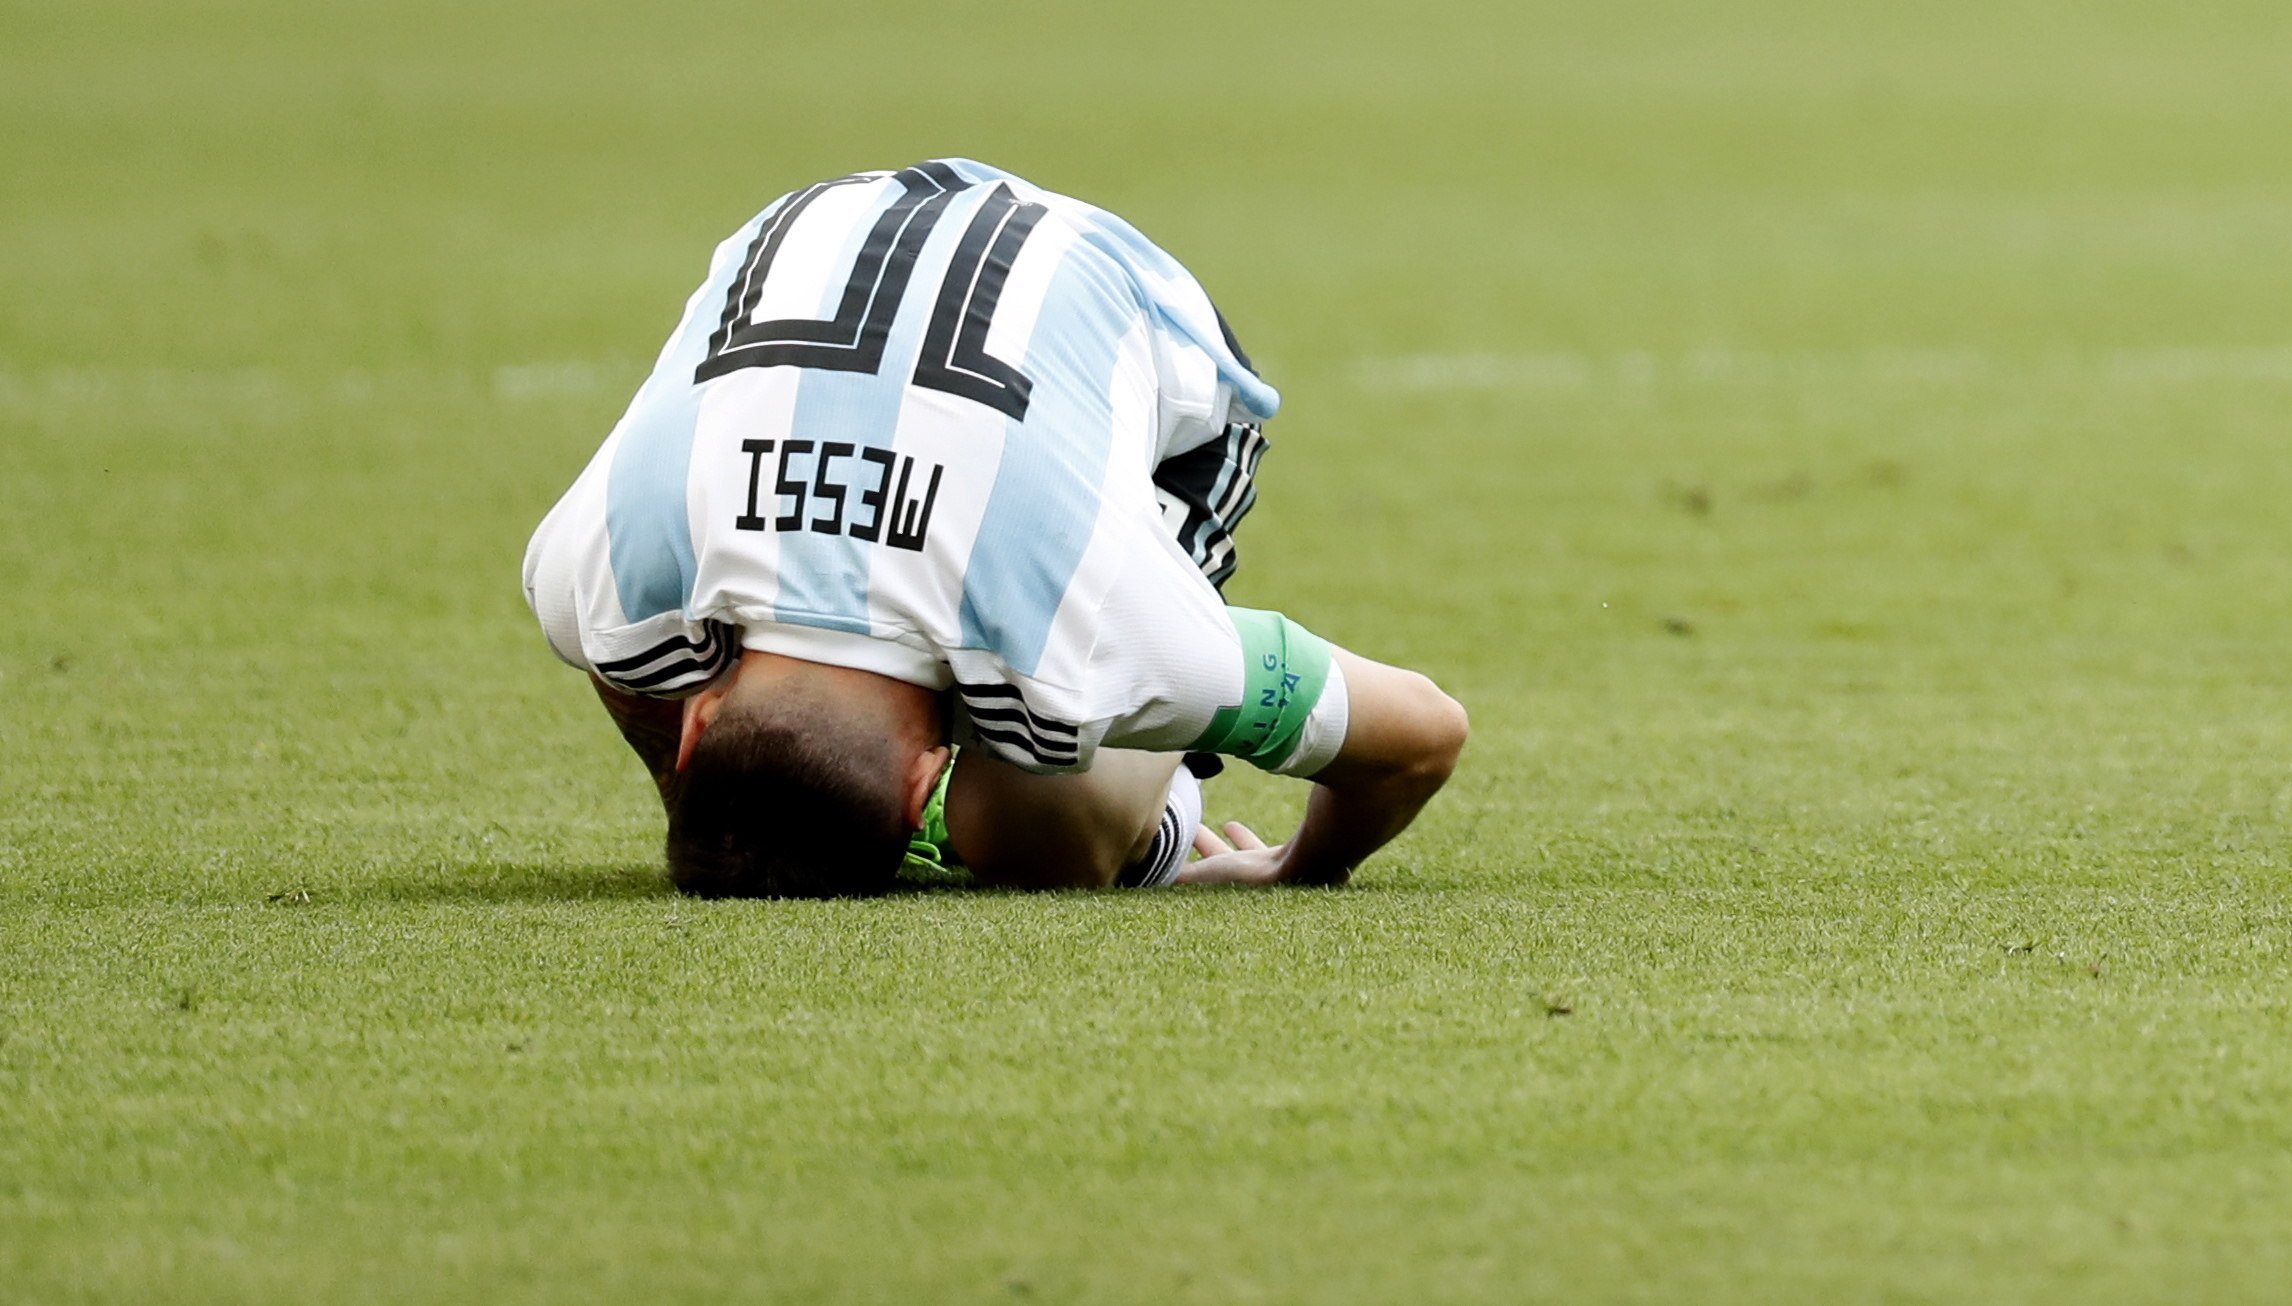 Foto: La sort ha acompanyat Messi en una jugada